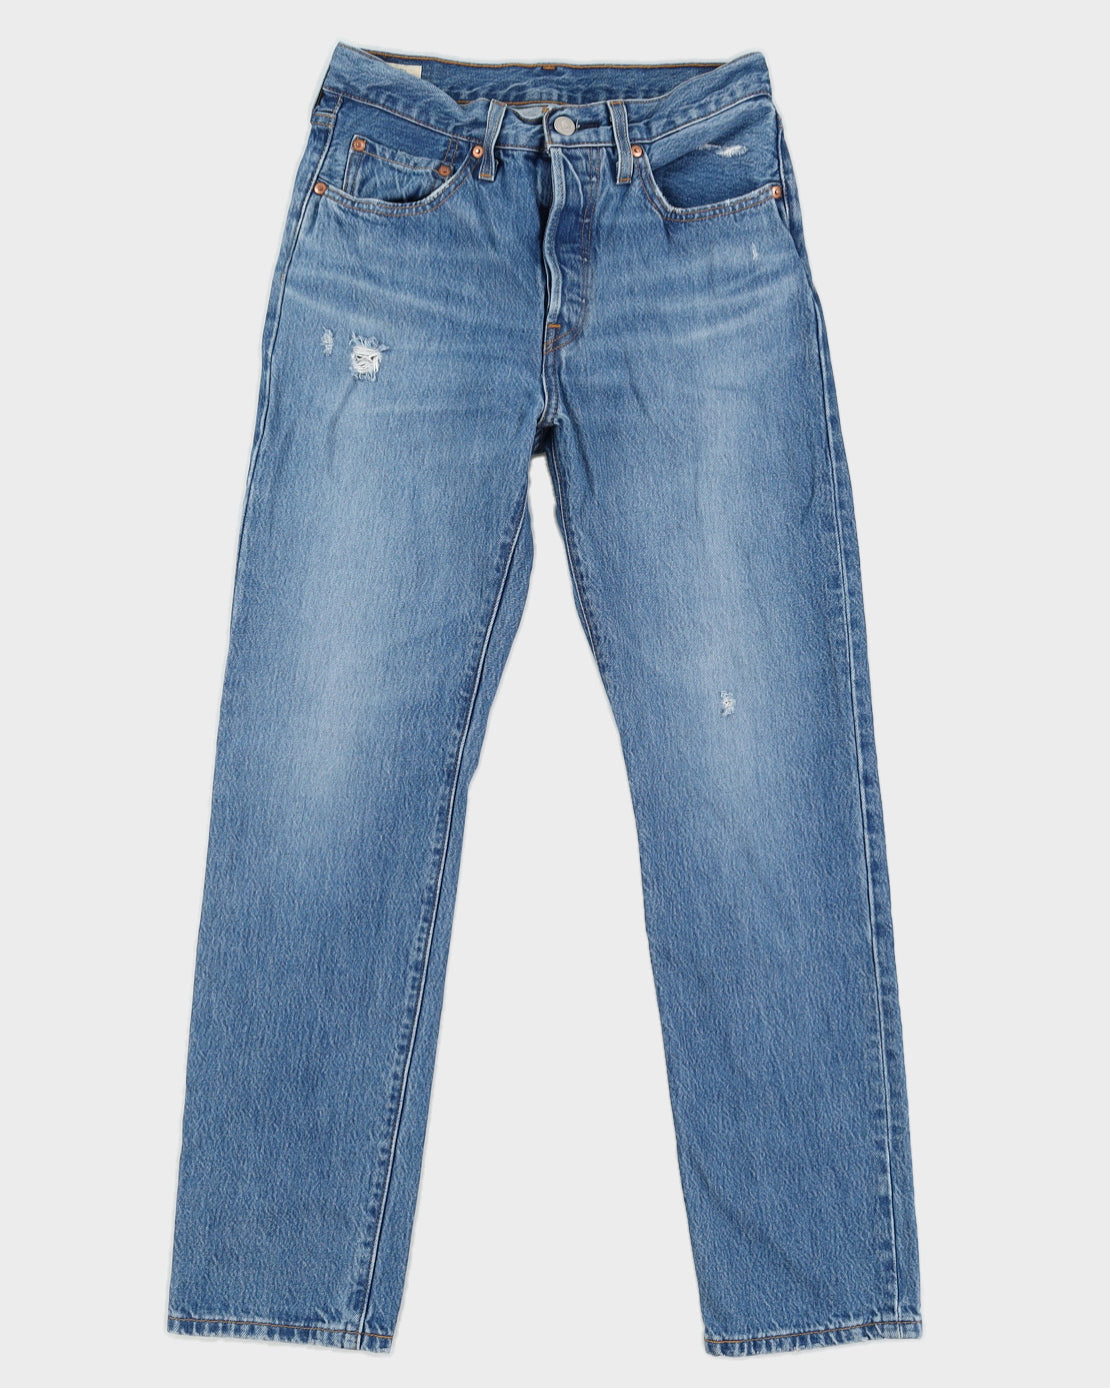 Levi's Medium Wash 501 Denim Jeans - W26 L30